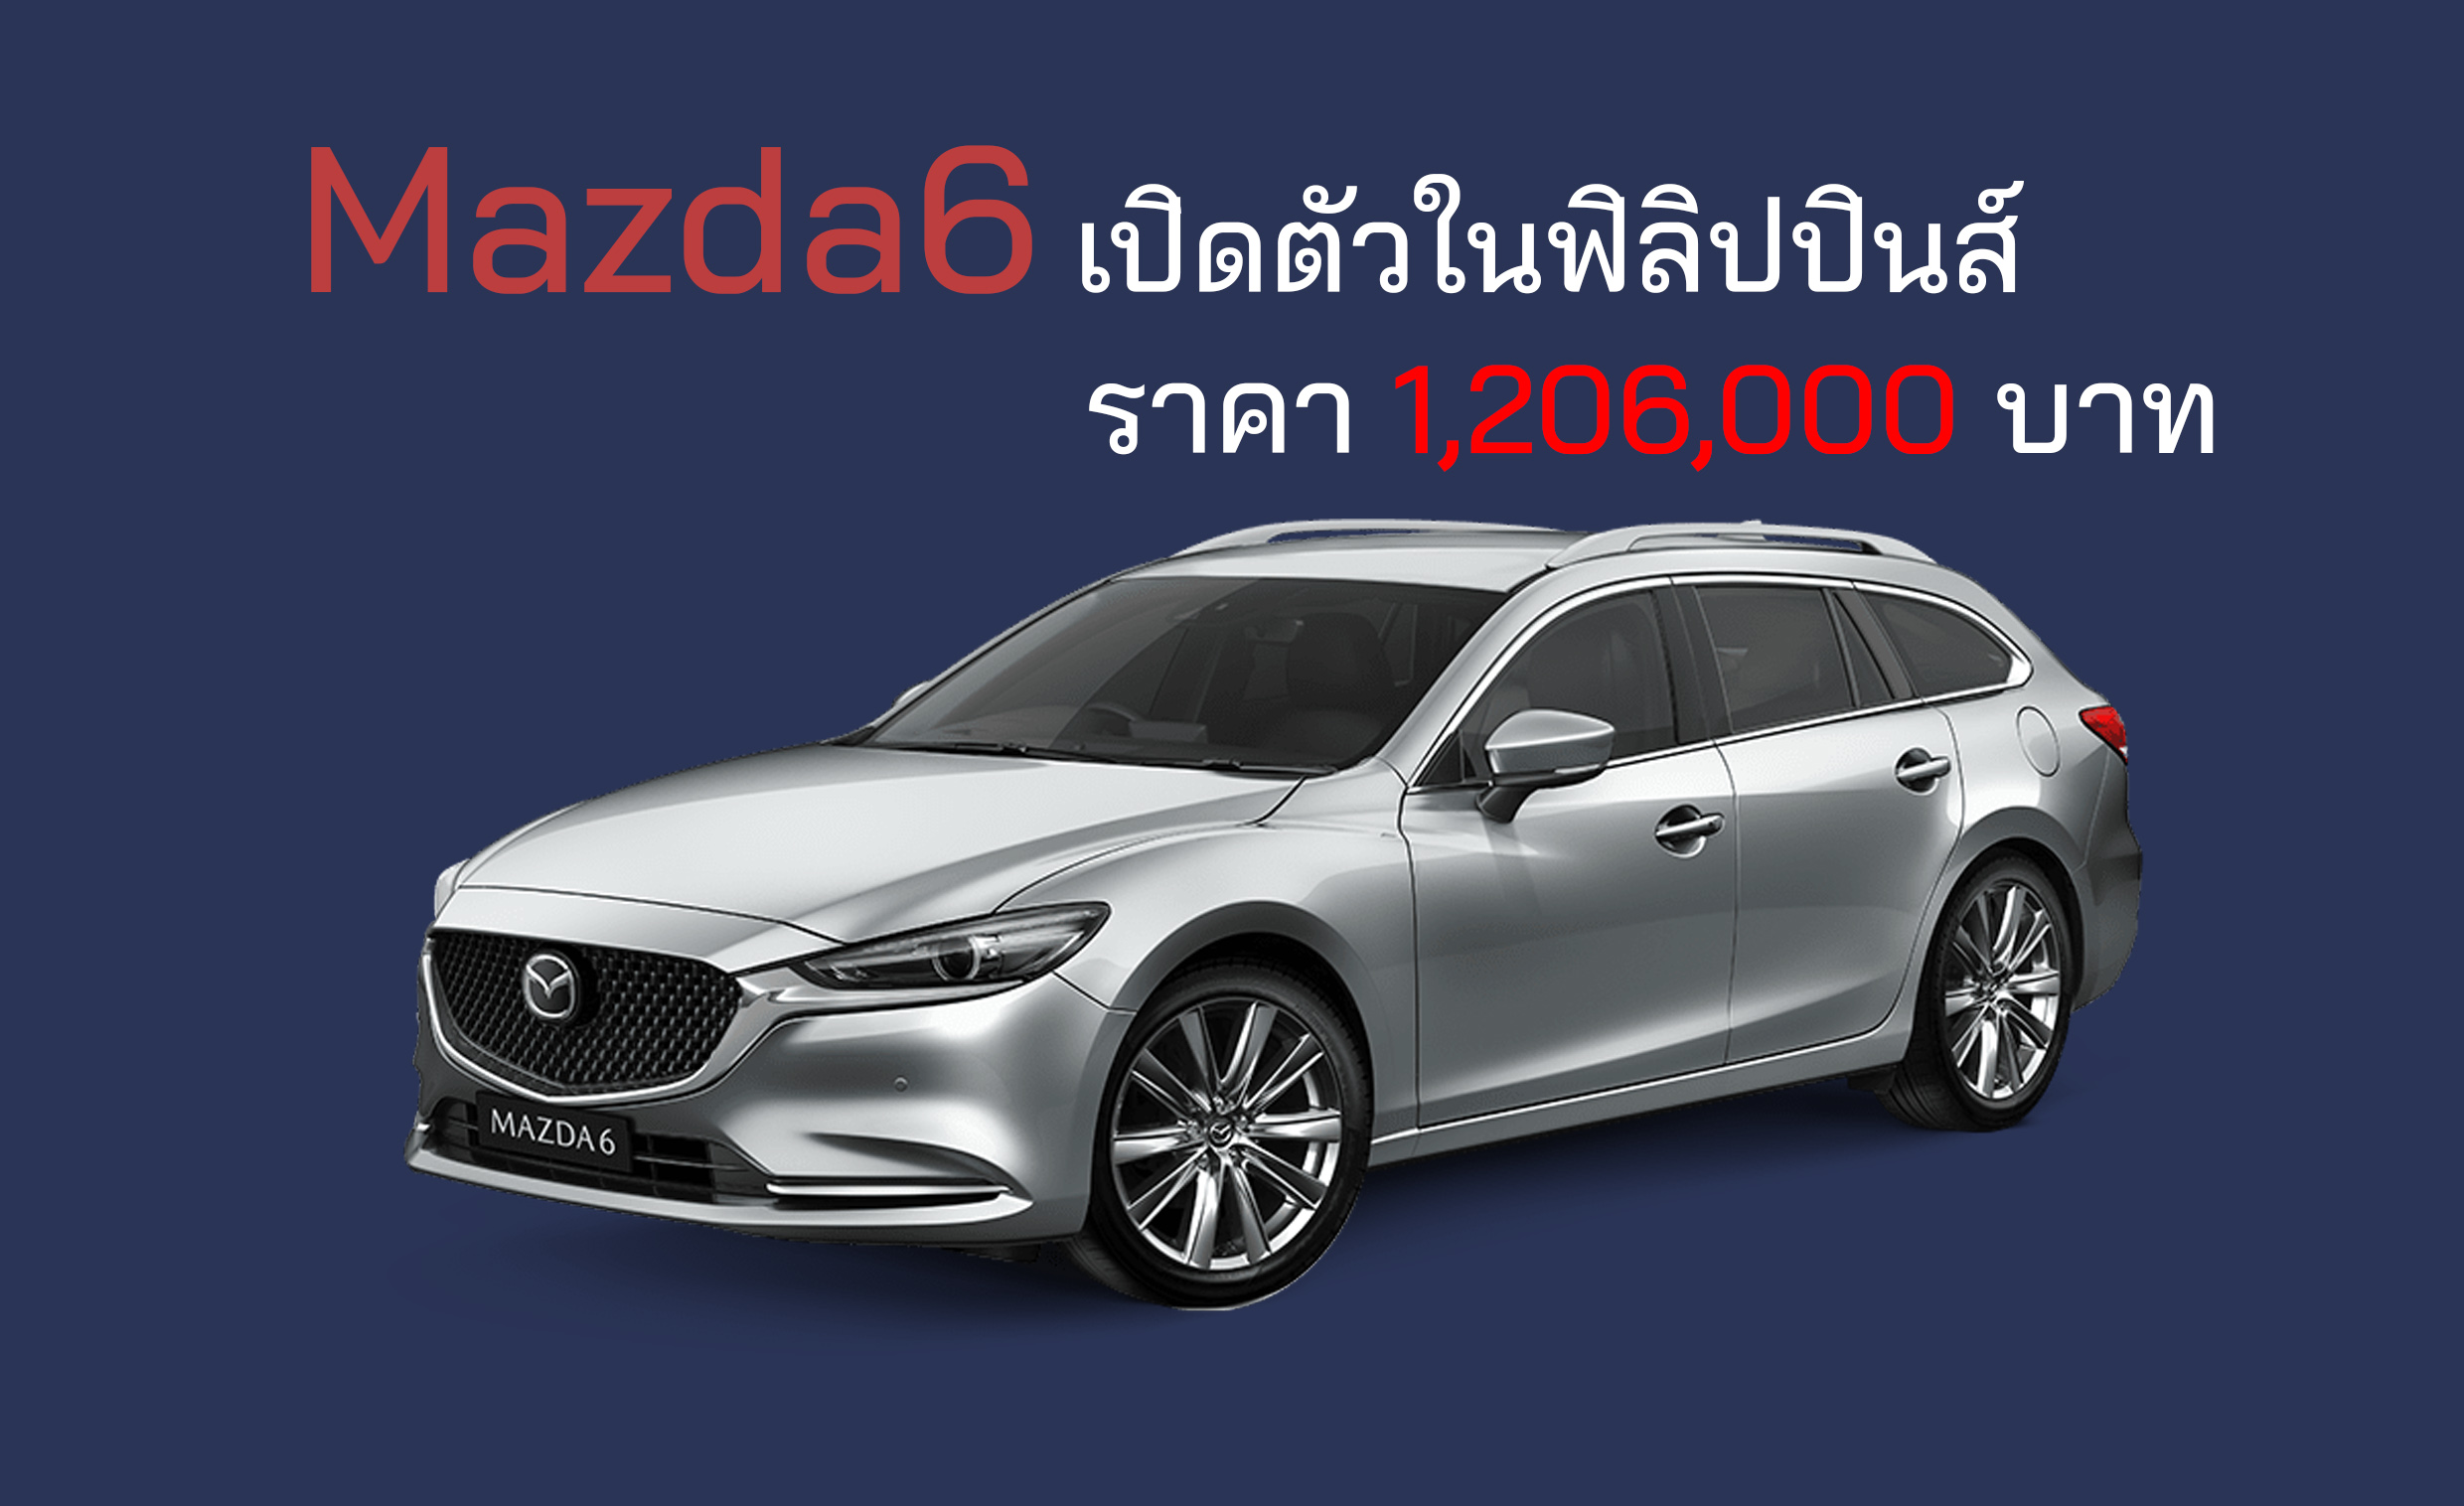 เปิดตัว All-NEW Mazda6 ราคา 1,206,000 บาท ในฟิลิปปินส์